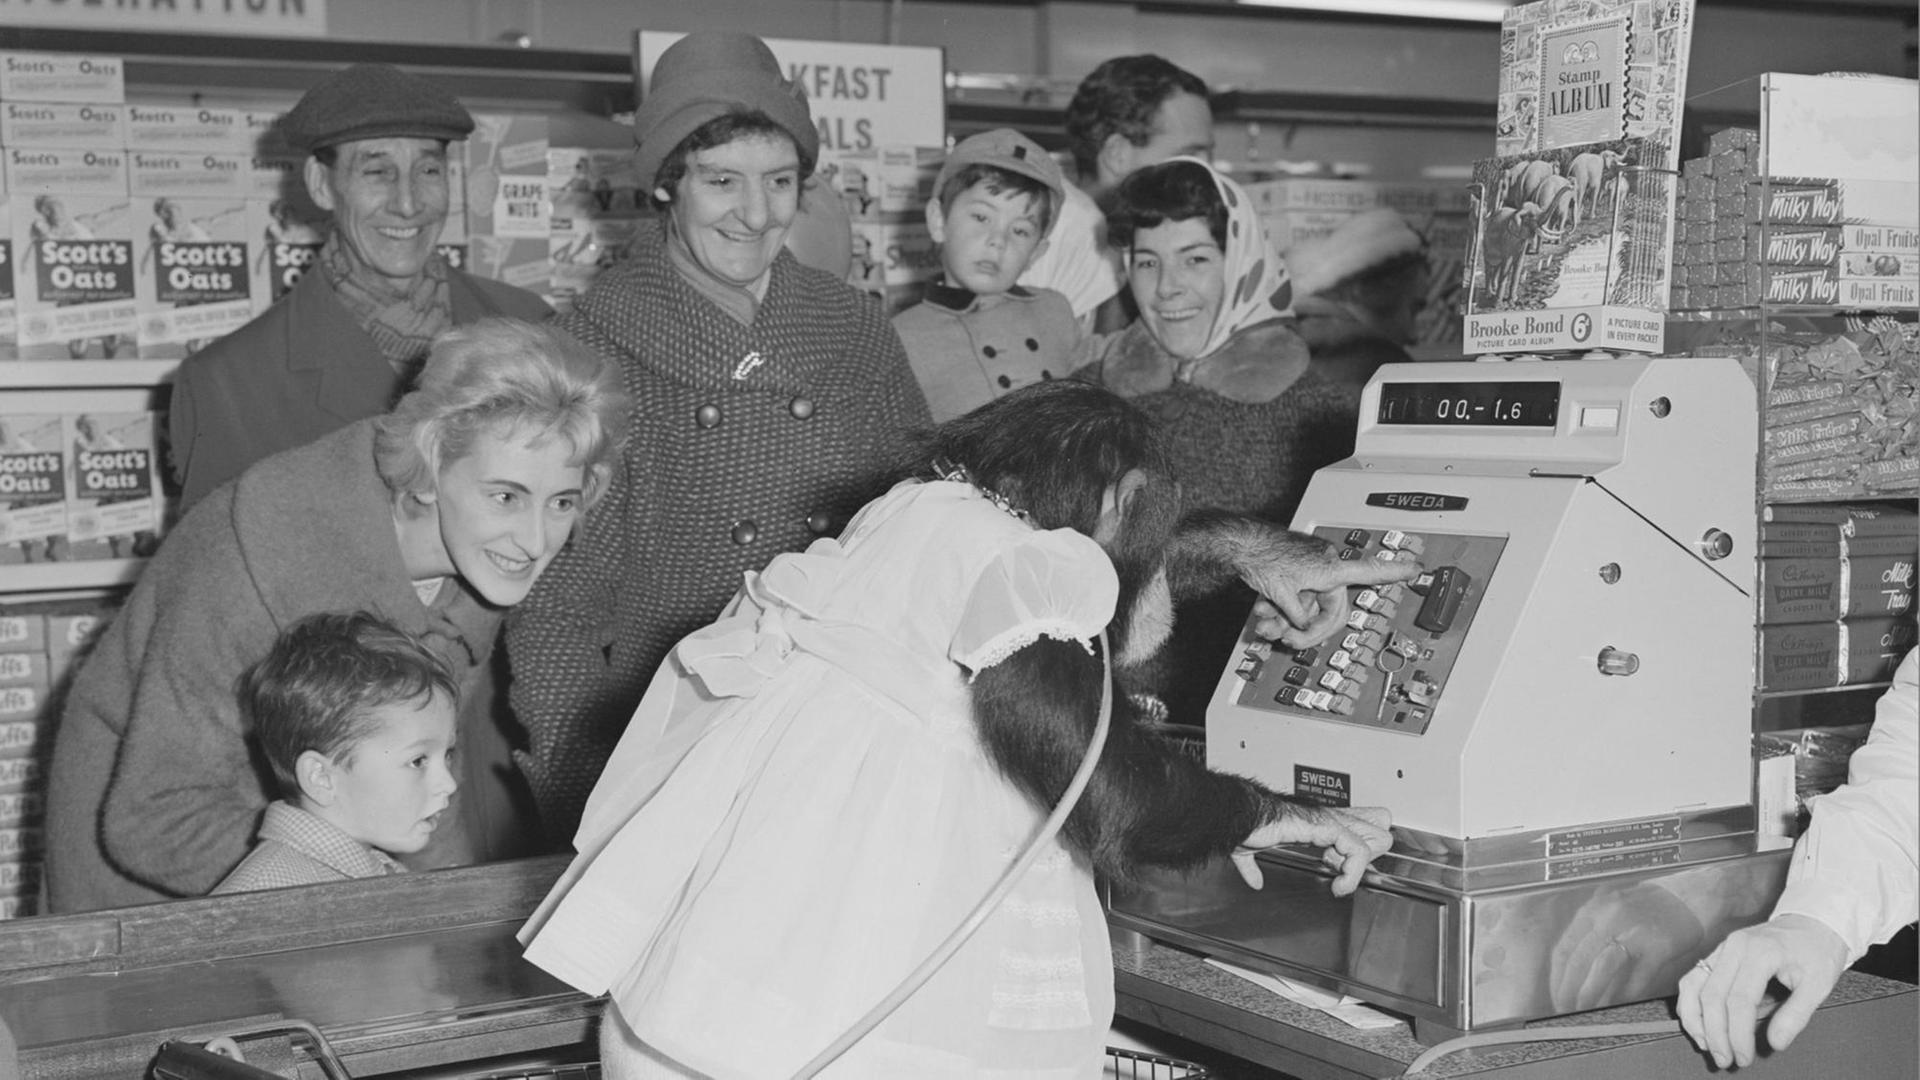 Werbung der Teemarke PG Tips mit einem Schimpansen an der Supermarkt-Kasse. 16. November 1962. Aufnahme für die Zeitung Kentish Times.